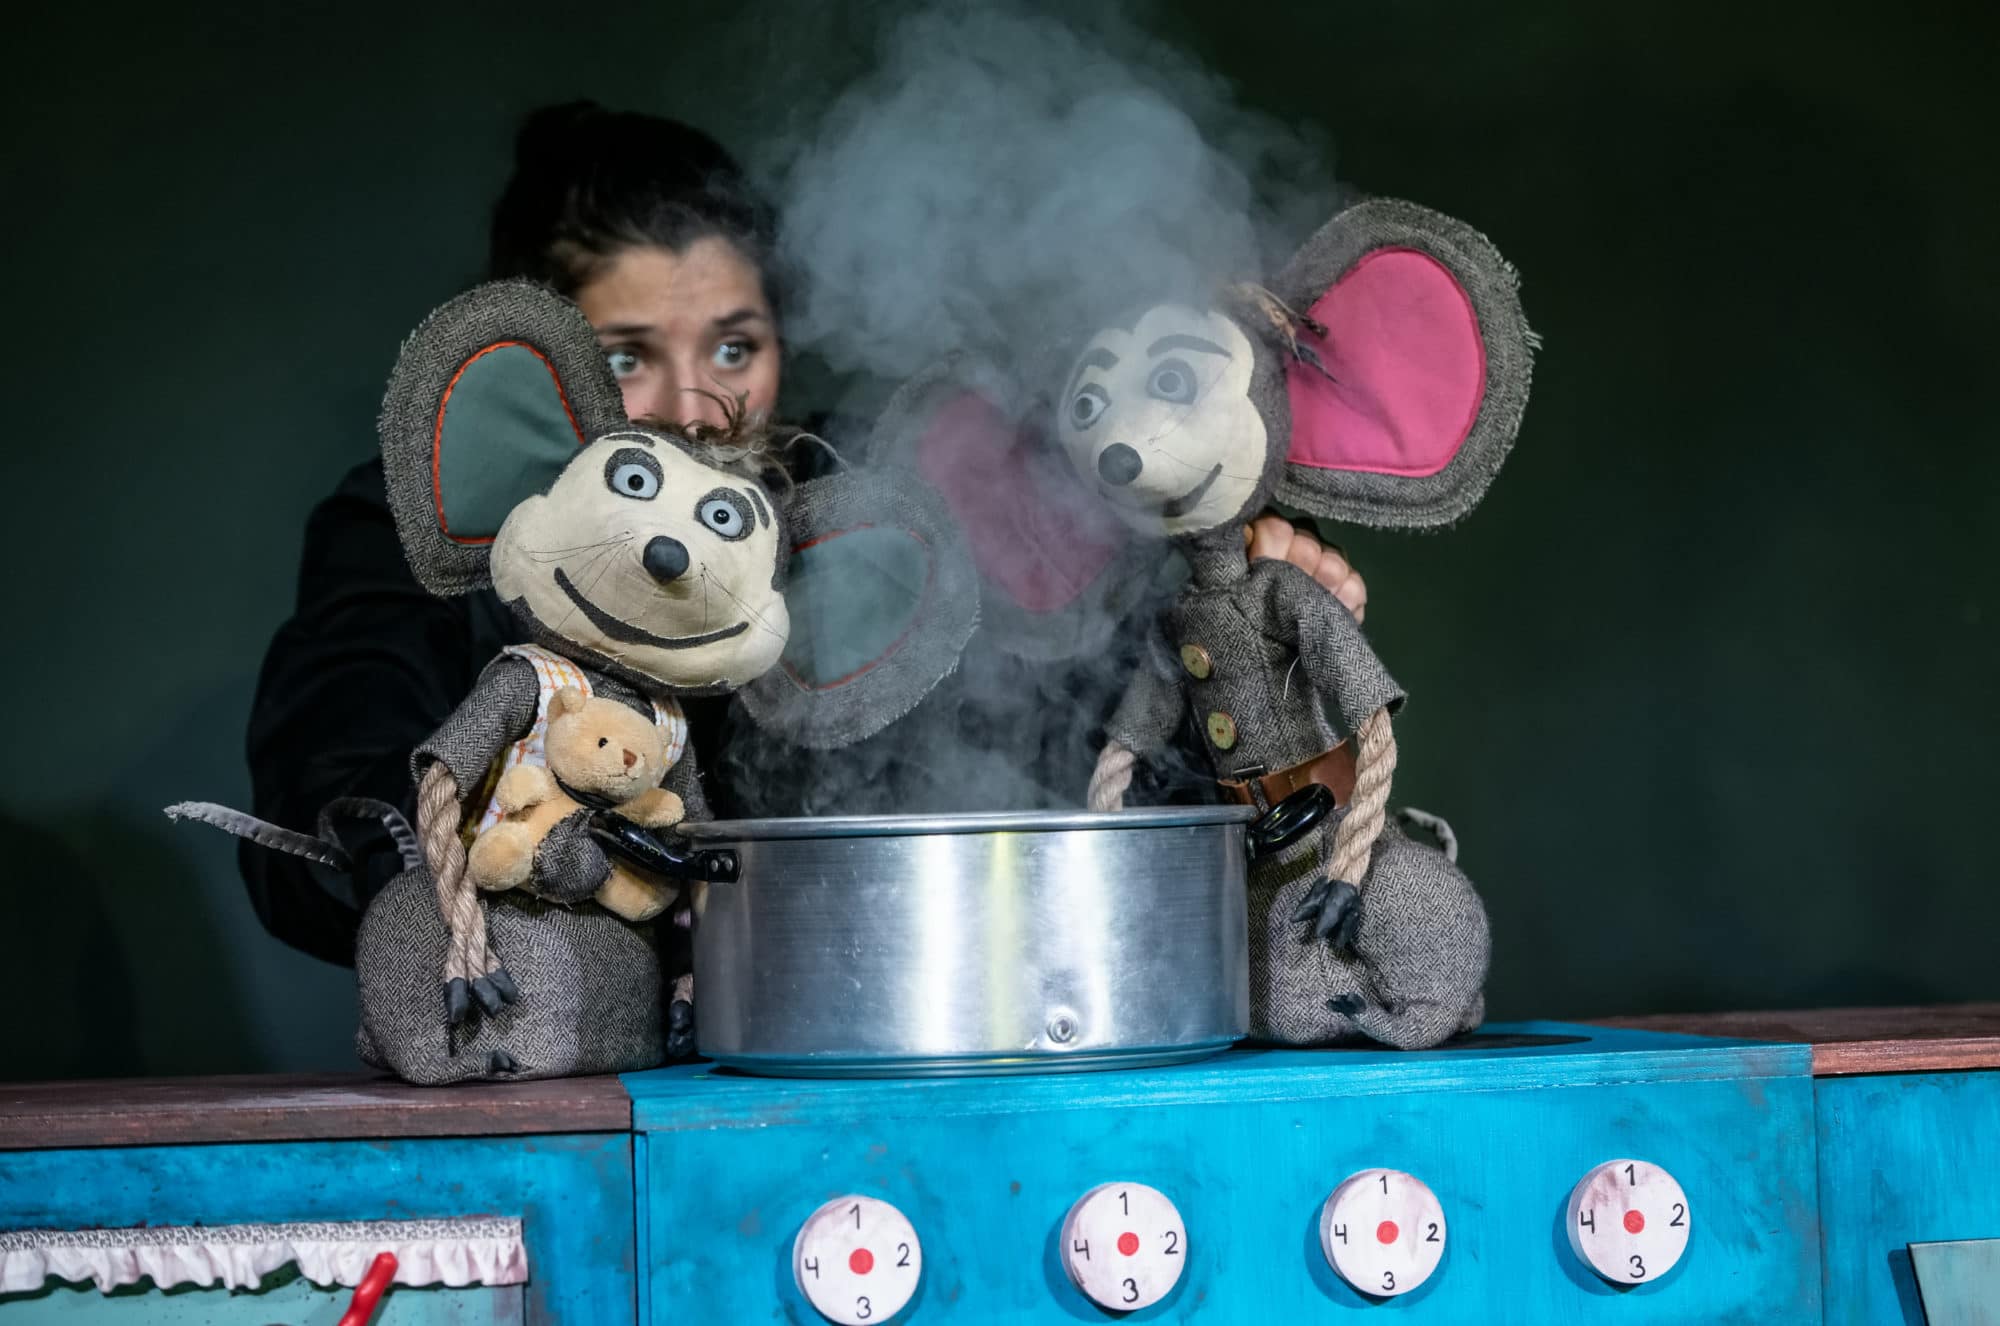 Fotografi: Bildet viser en forestilling der en kvinnelig skuespiller fremfører dukketeater med to dukker som illustrerer mus.